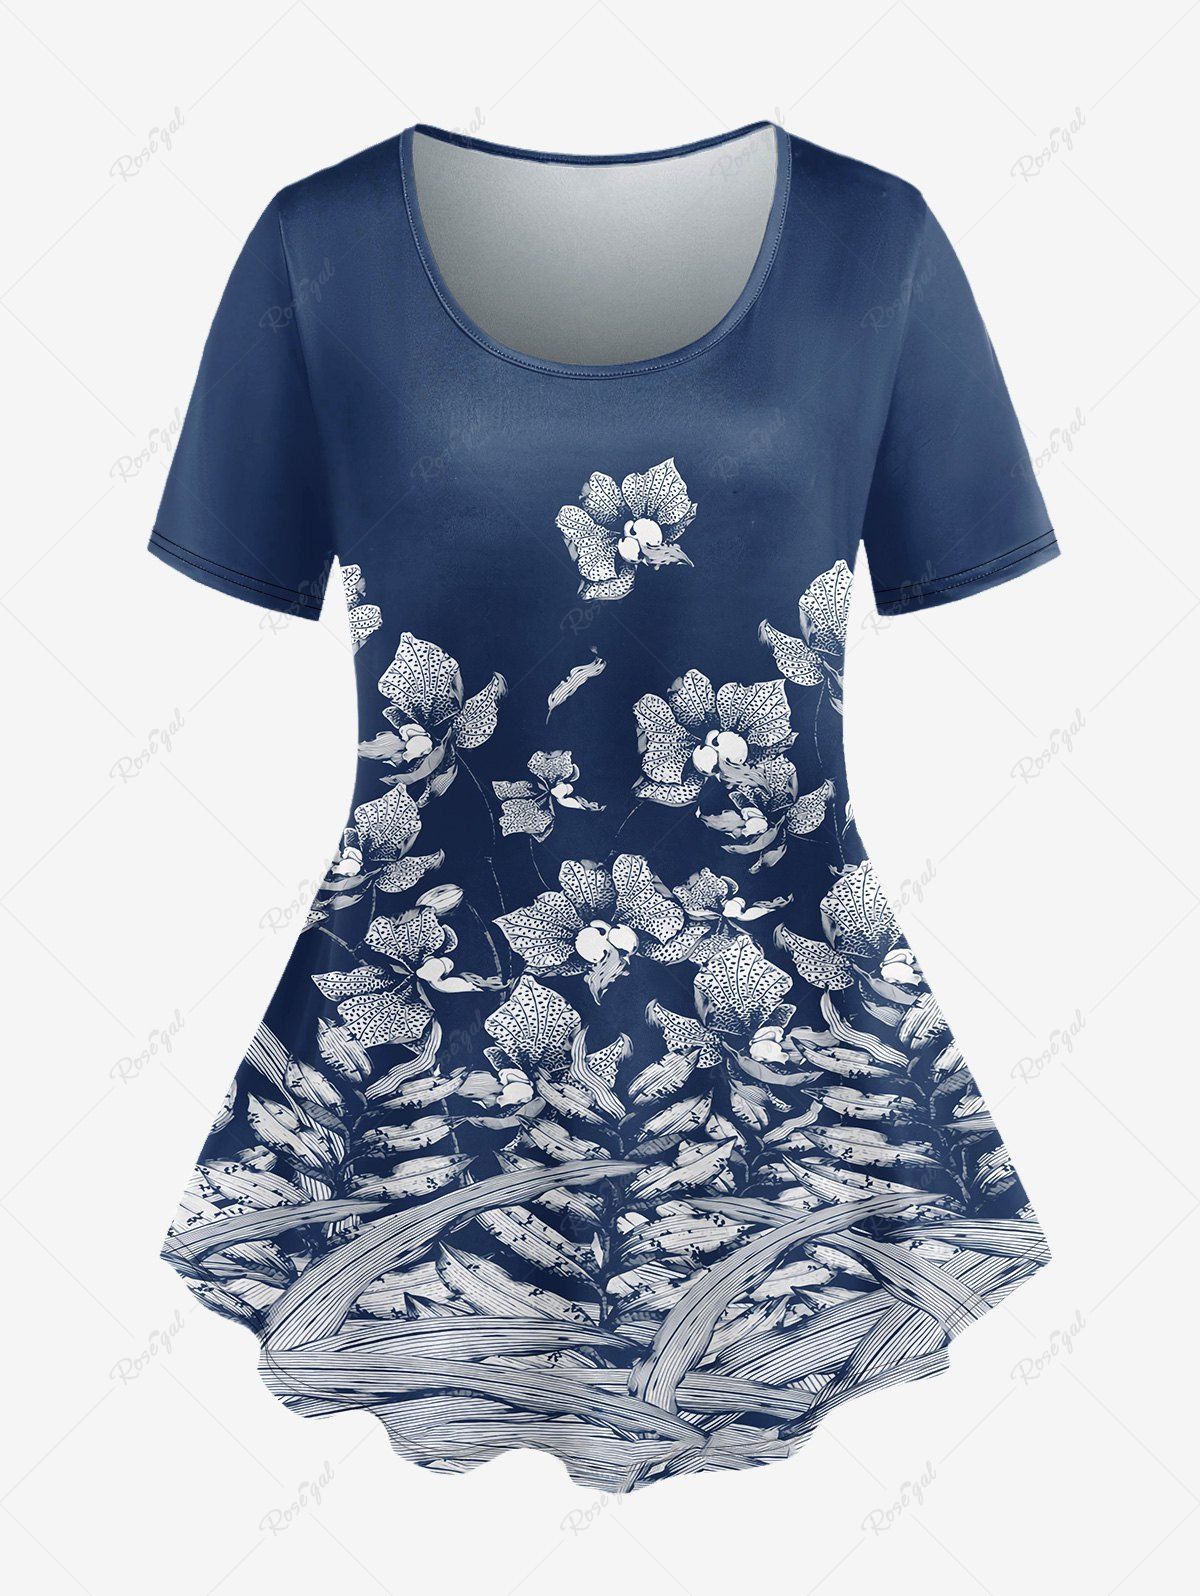 Trendy Plus Size Flower Printed Short Sleeves Tee  